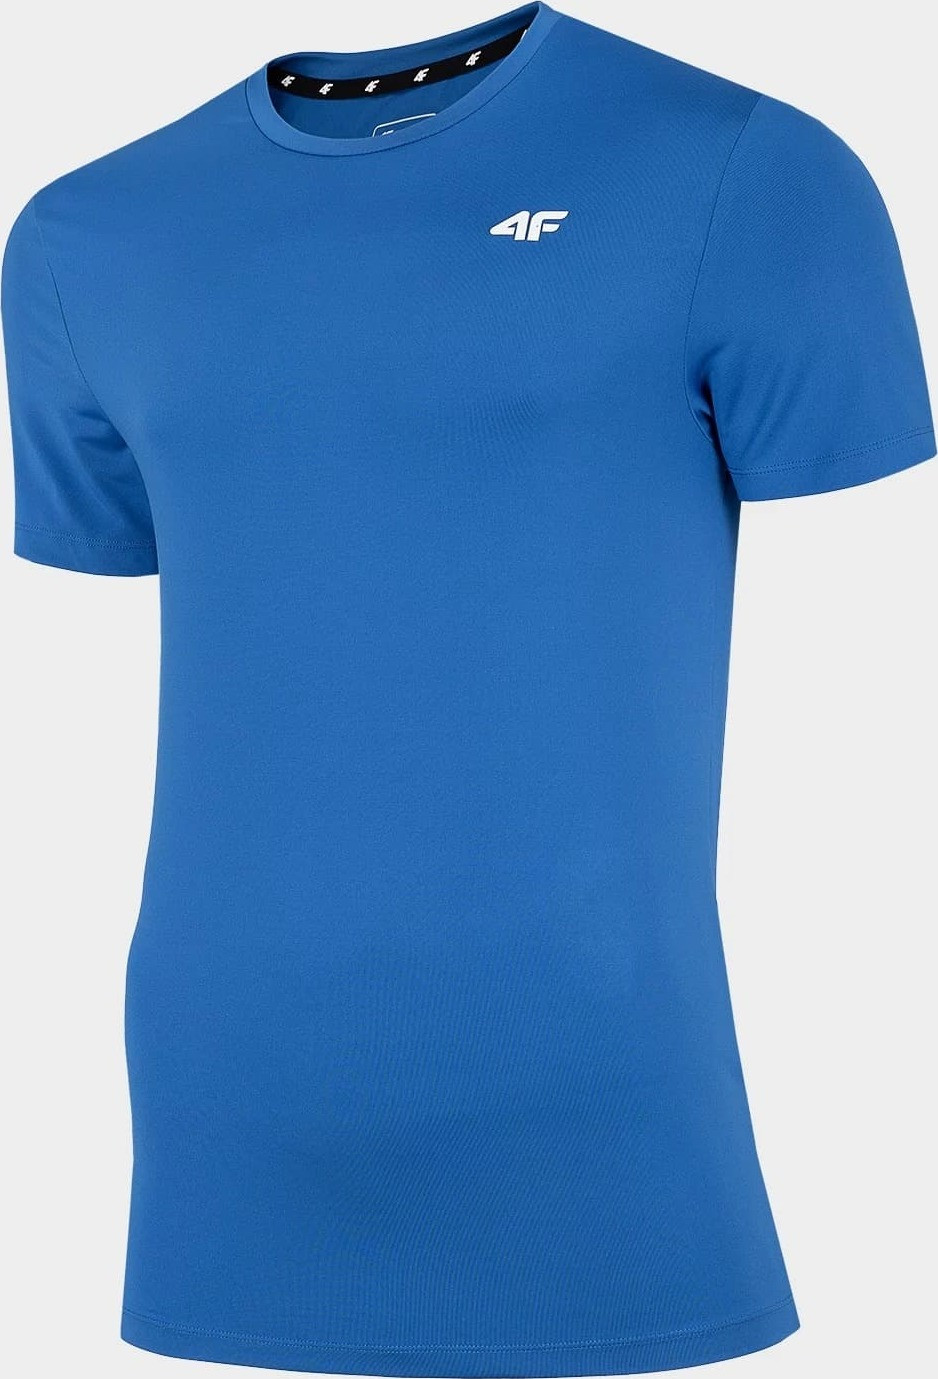 Pánské funkční tričko 4F TSMF002 Modré Modrá S